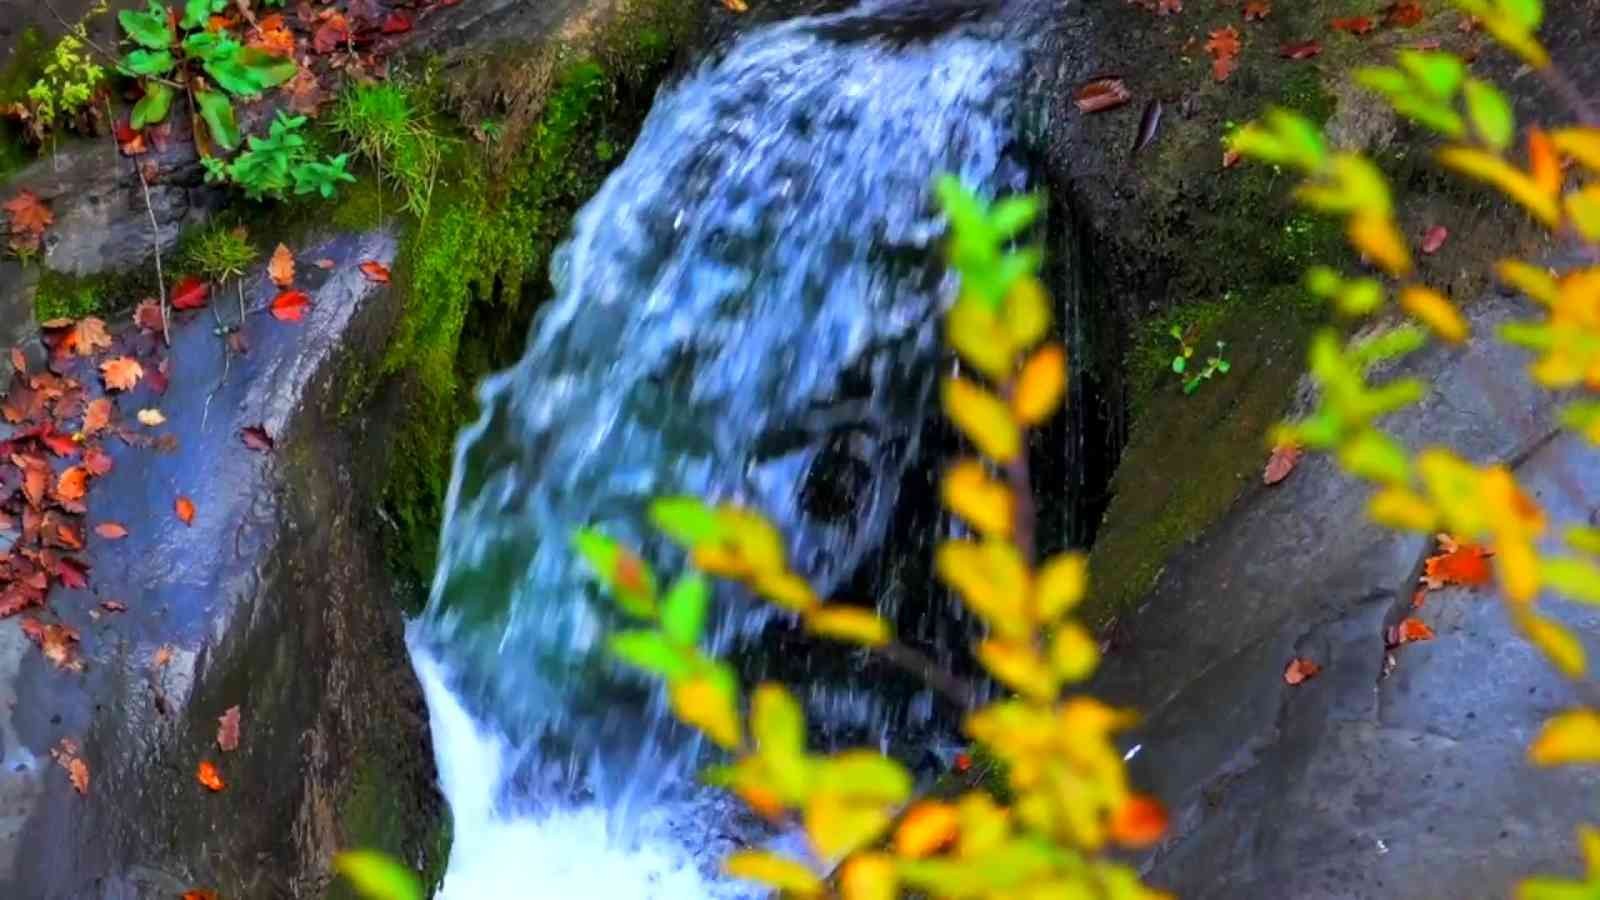 Yılançatı Kanyonu’nda sonbahar güzelliği #duzce